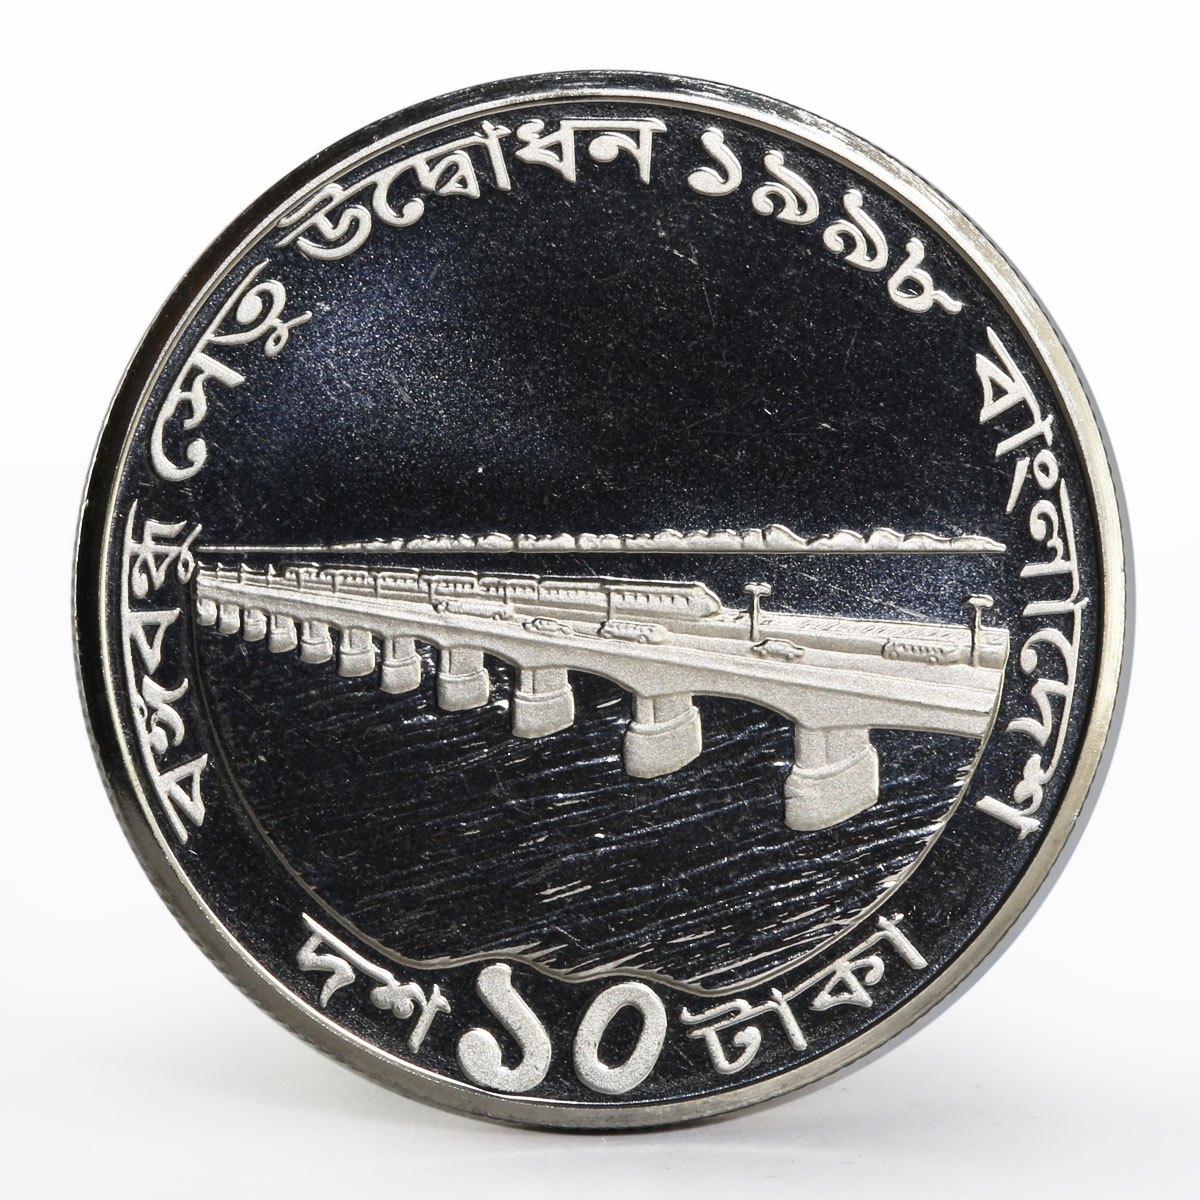 Bangladesh 10 taka Opening of Bangabandhu Jamuna bridge proof nickel coin 1998